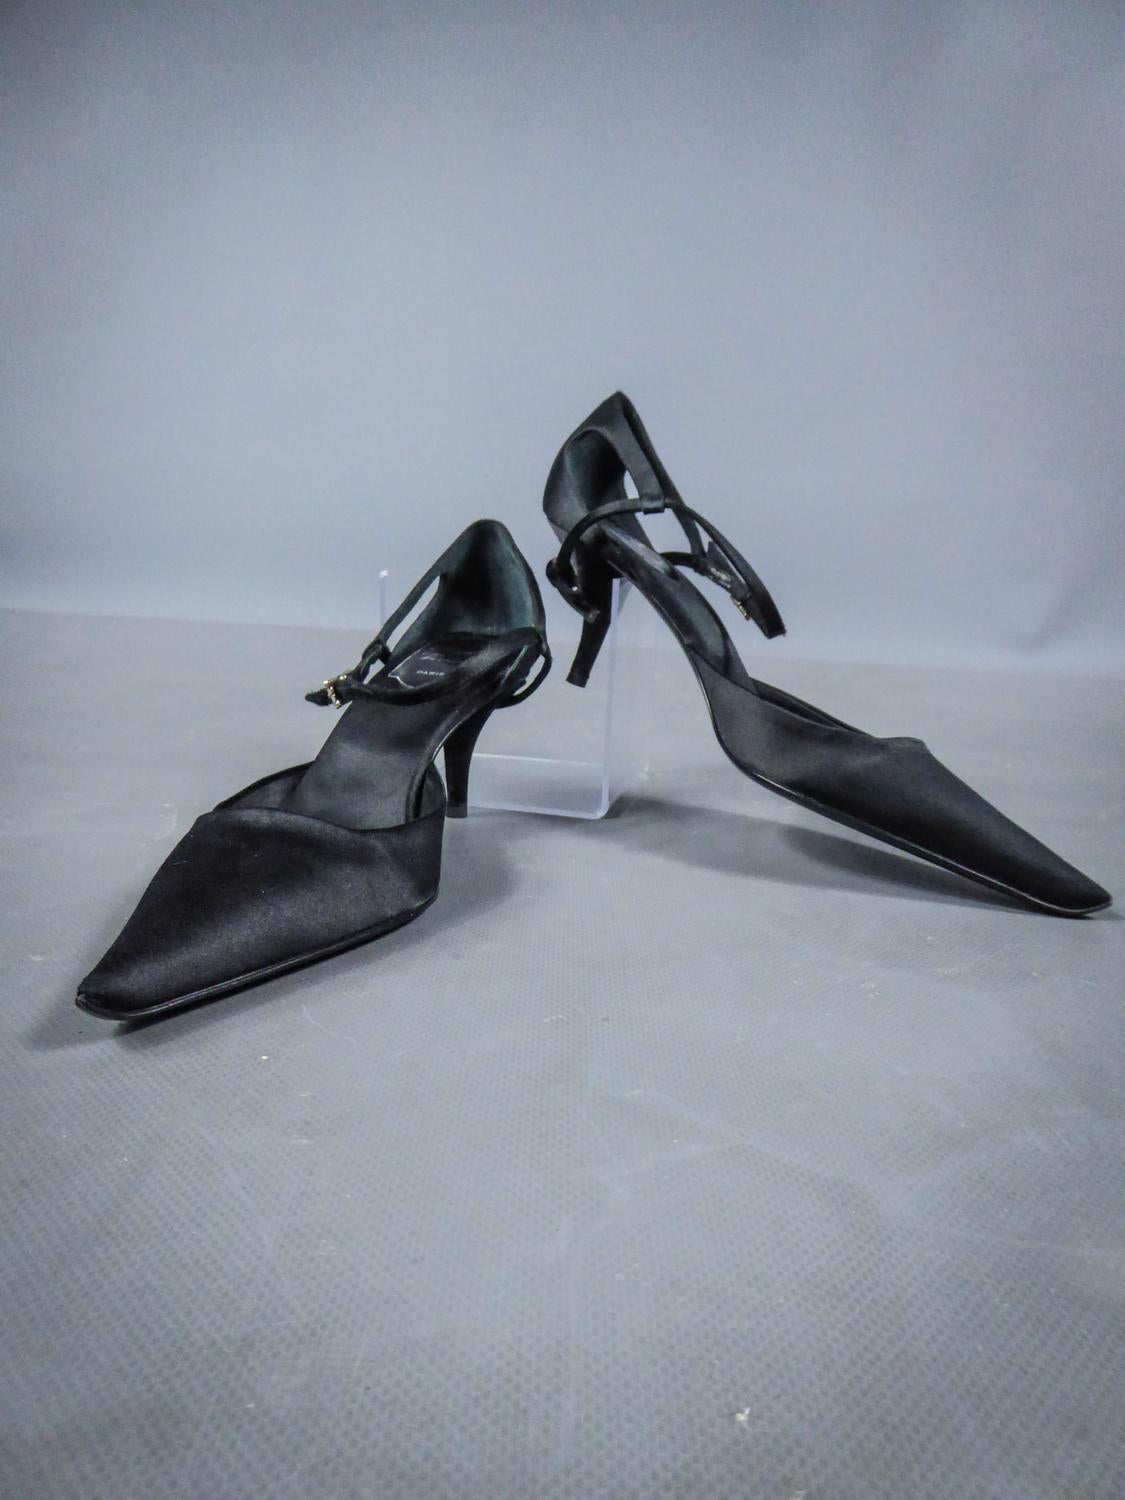 Ungefähr 2000
Frankreich

Neuwertiges Paar Abendpumps von Roger Vivier aus schwarzem Seidensatin aus dem Jahr 2000. Schuhe mit Stiletto-Absatz mit spitzer Form vorne, verziert mit einer Schleife aus dem gleichen Stoff an der Ferse. Schließt durch